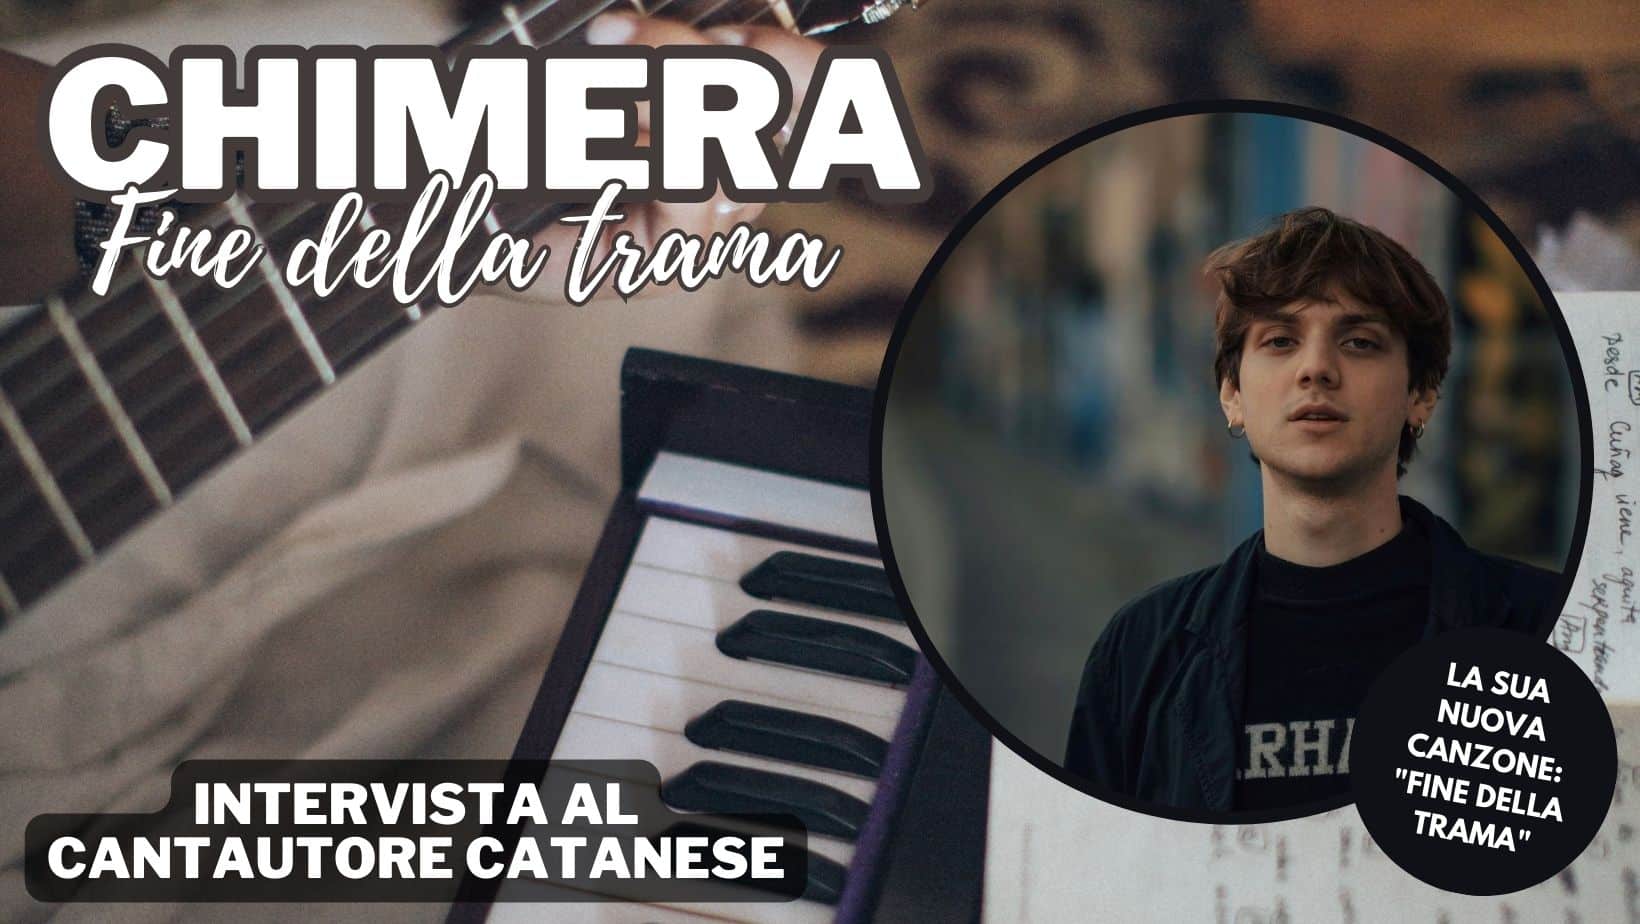 Chi è Chimera, giovane cantautore catanese: la sua nuova canzone “Fine della trama”